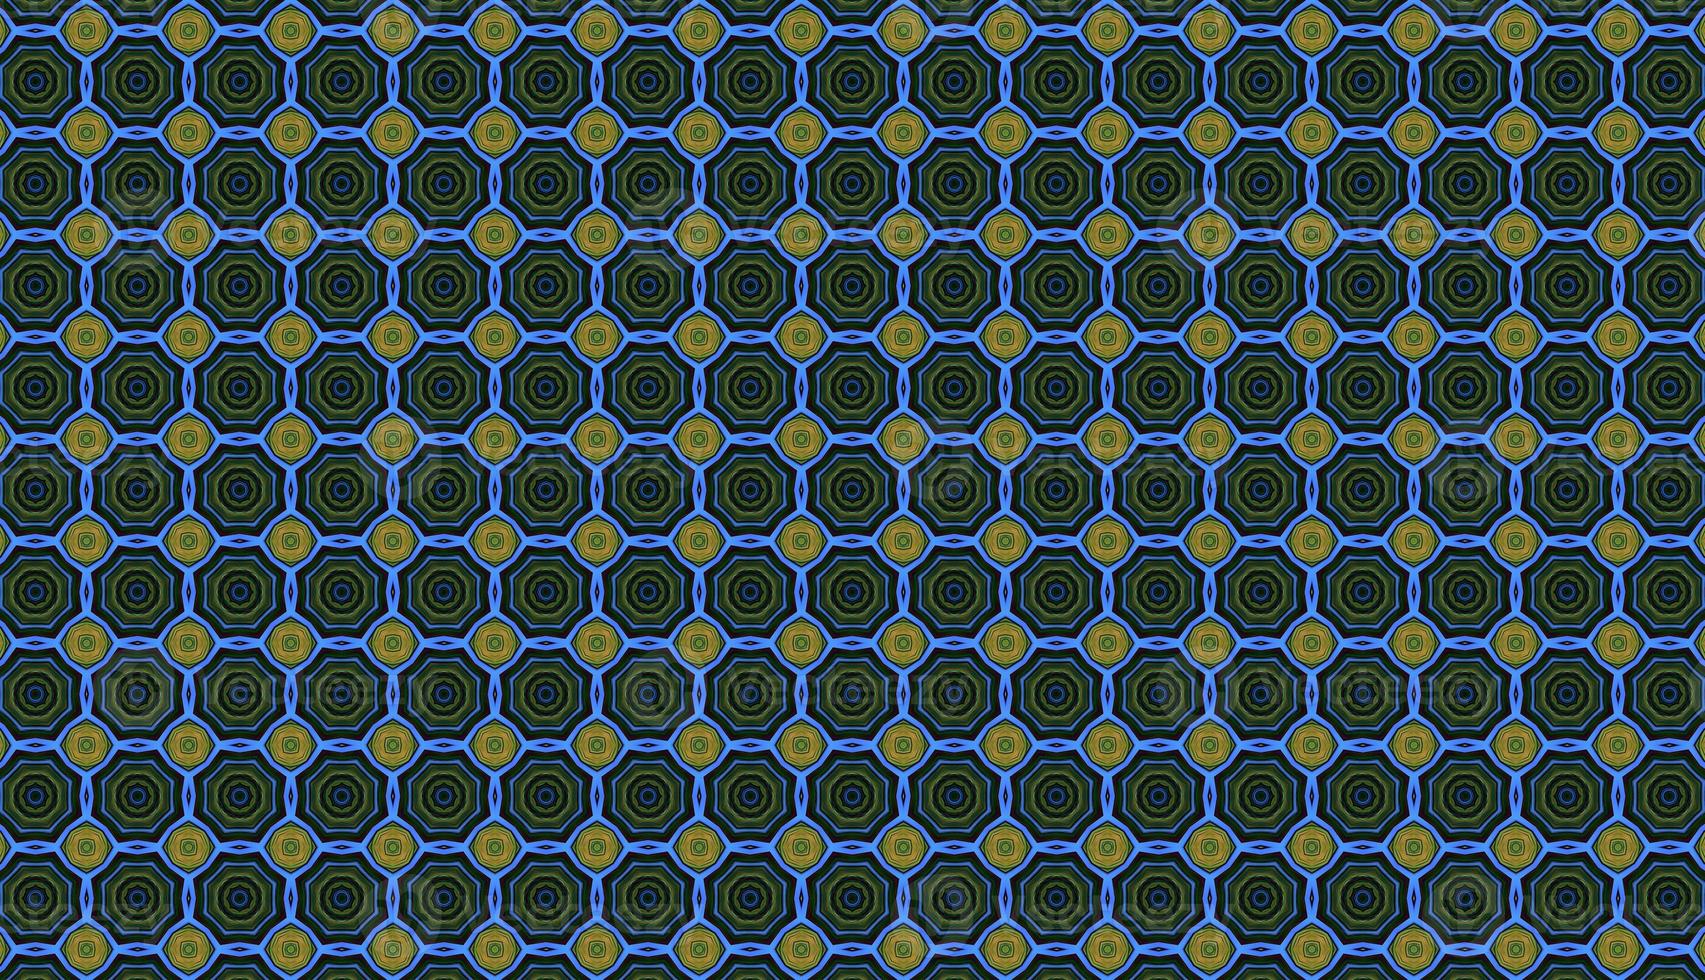 moda de patrones sin fisuras, fondo abstracto. fondo retro repetitivo grunge geométrico enlosables. ilustración de arte extraño foto